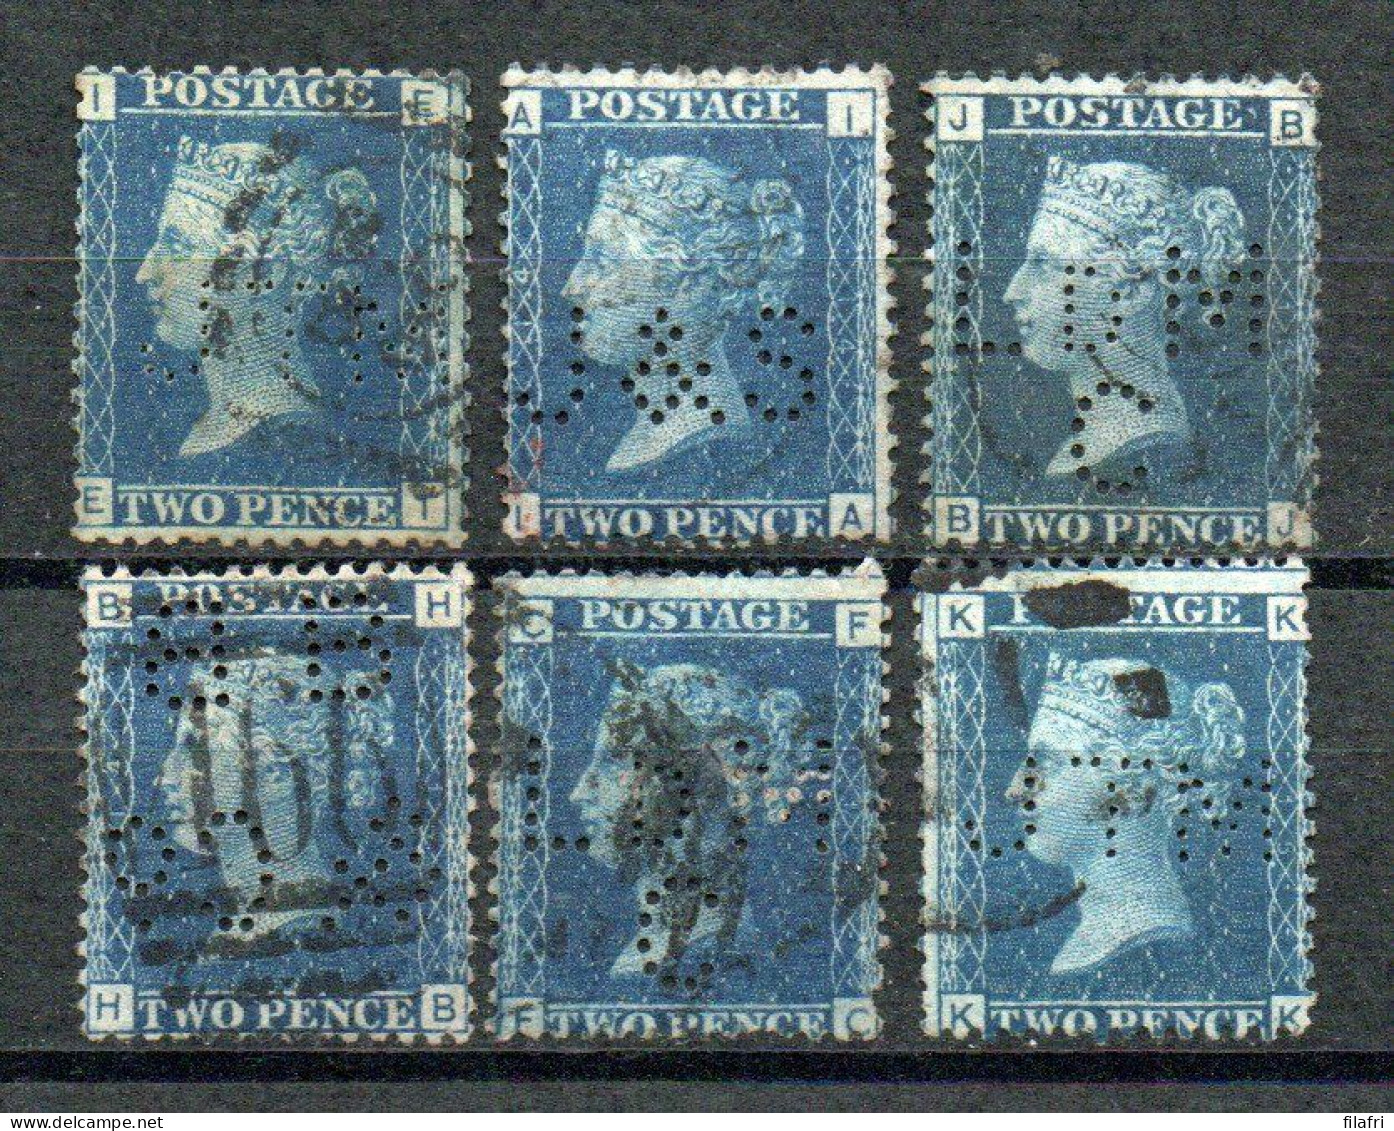 Yv 27 - 6 Perfins - Period 1840 - 1901 "Queen Victoria" : Quality Stamps (2 Scans) - Gezähnt (perforiert)